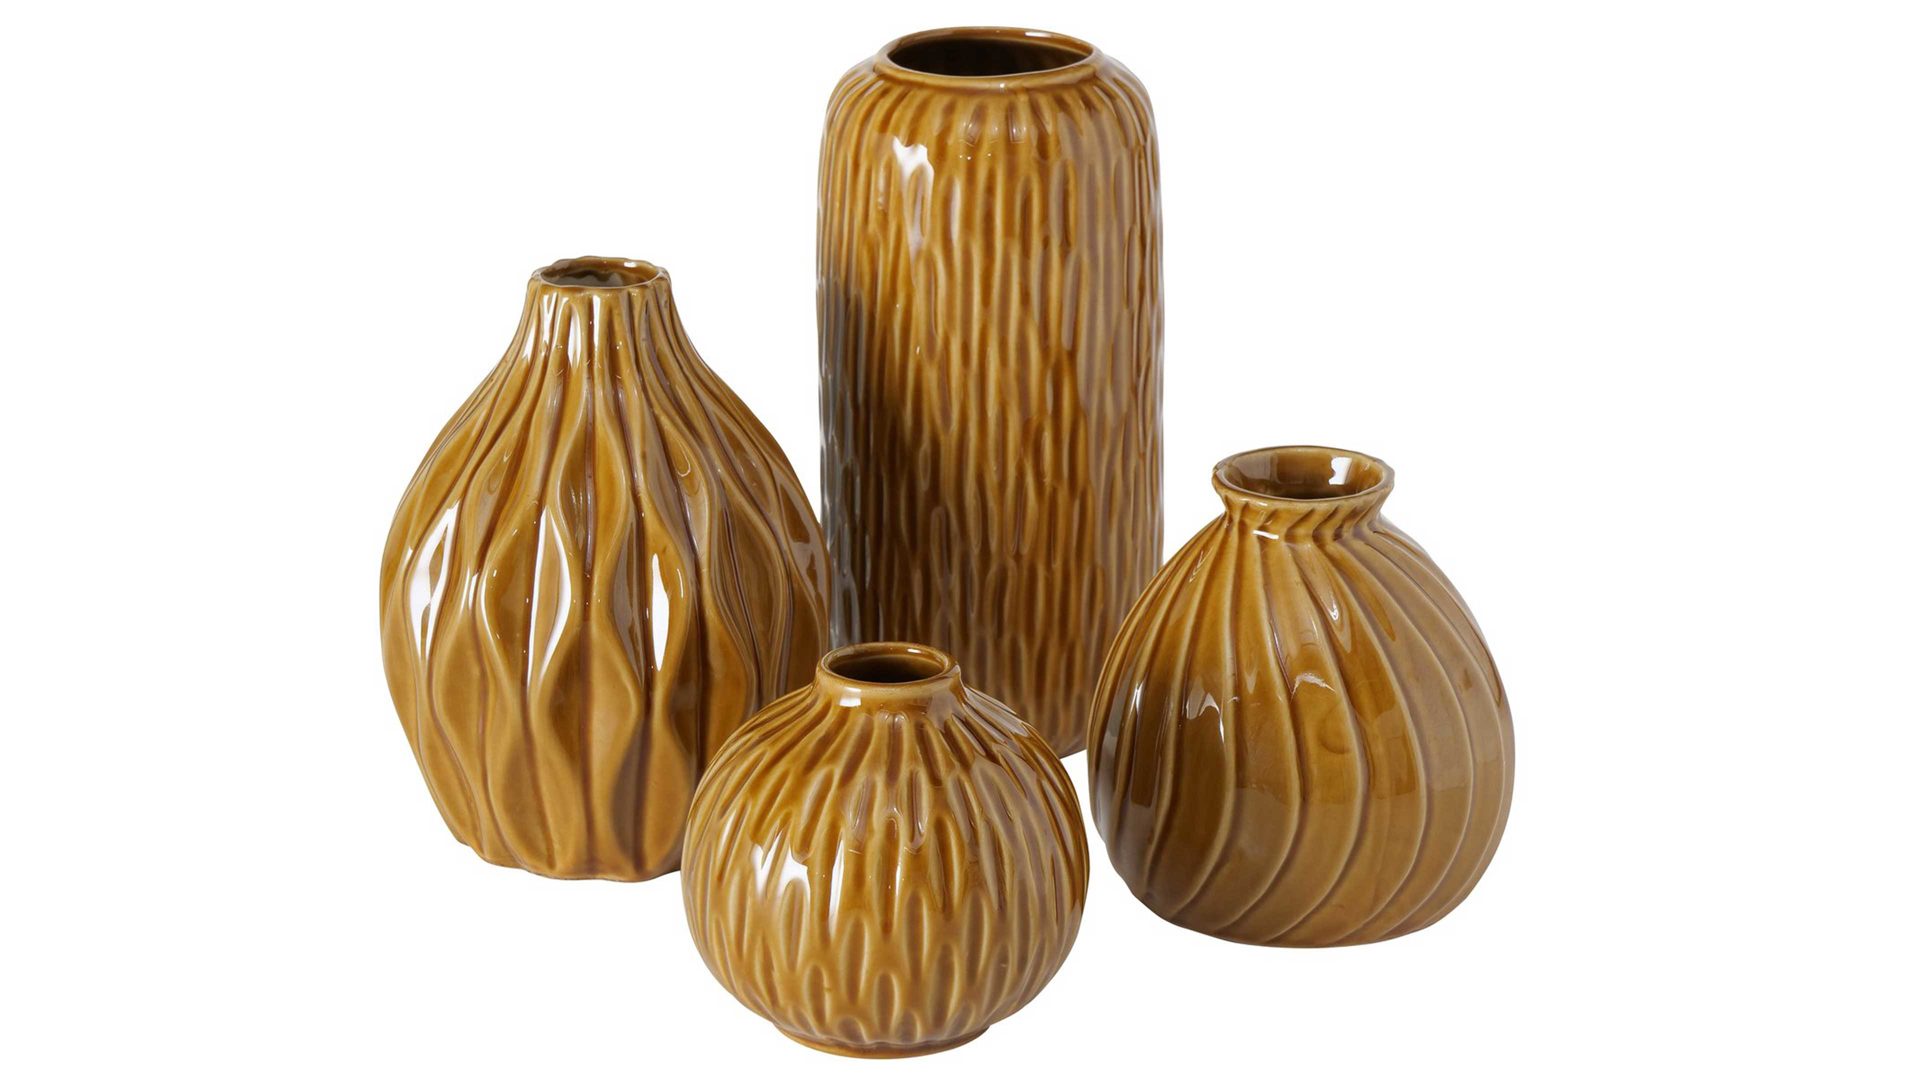 Vase Interliving BEST BUDDYS! aus Keramik in Braun Interliving BEST BUDDYS! Vasen-Set Zalina braunes Porzellan – vierteilig